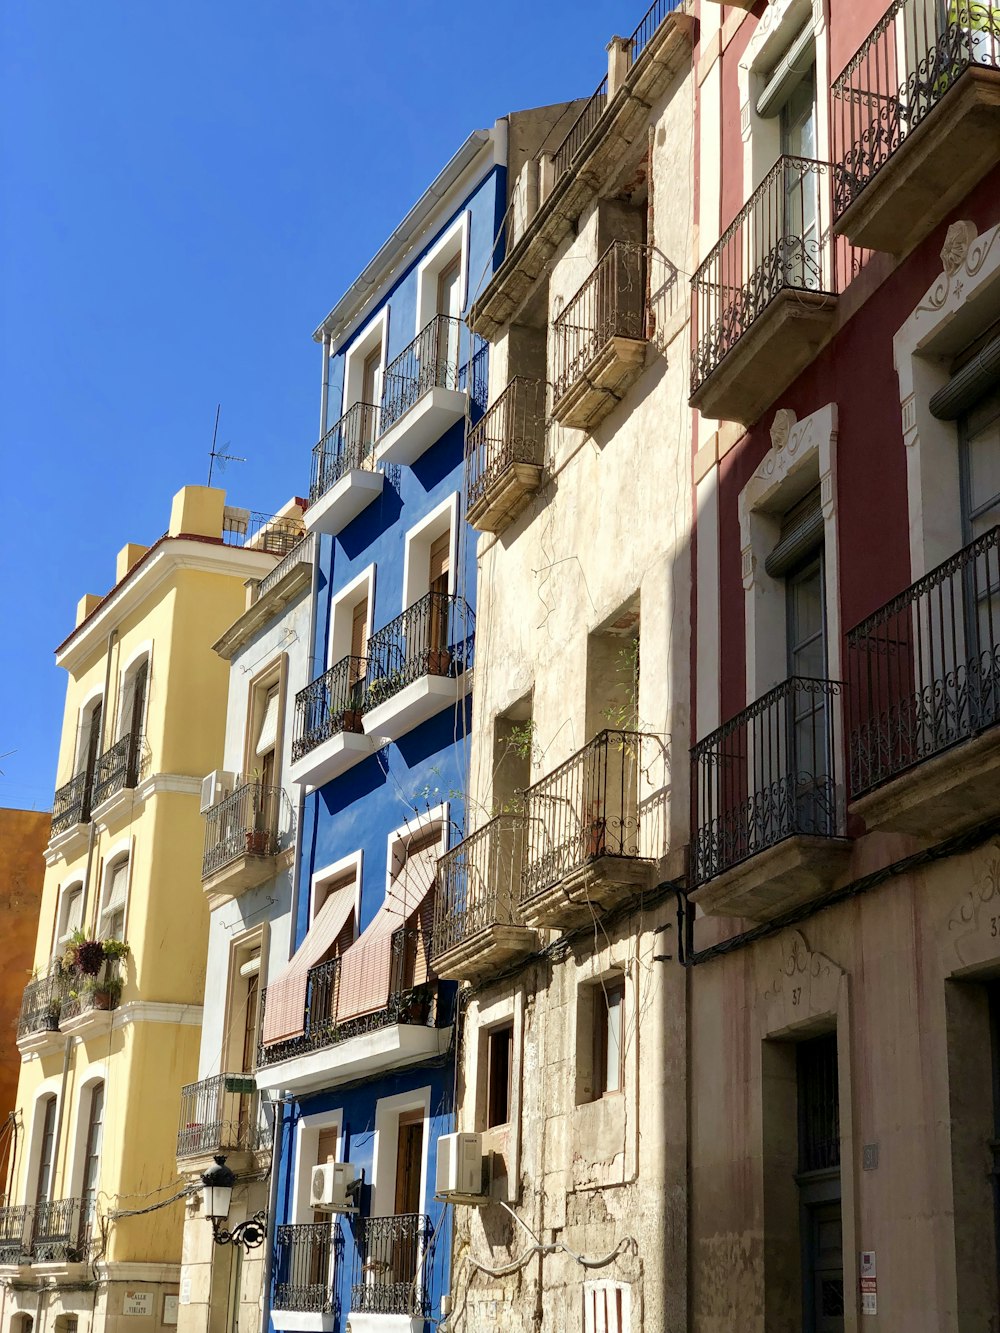 Cinque edifici in cemento di colori assortiti